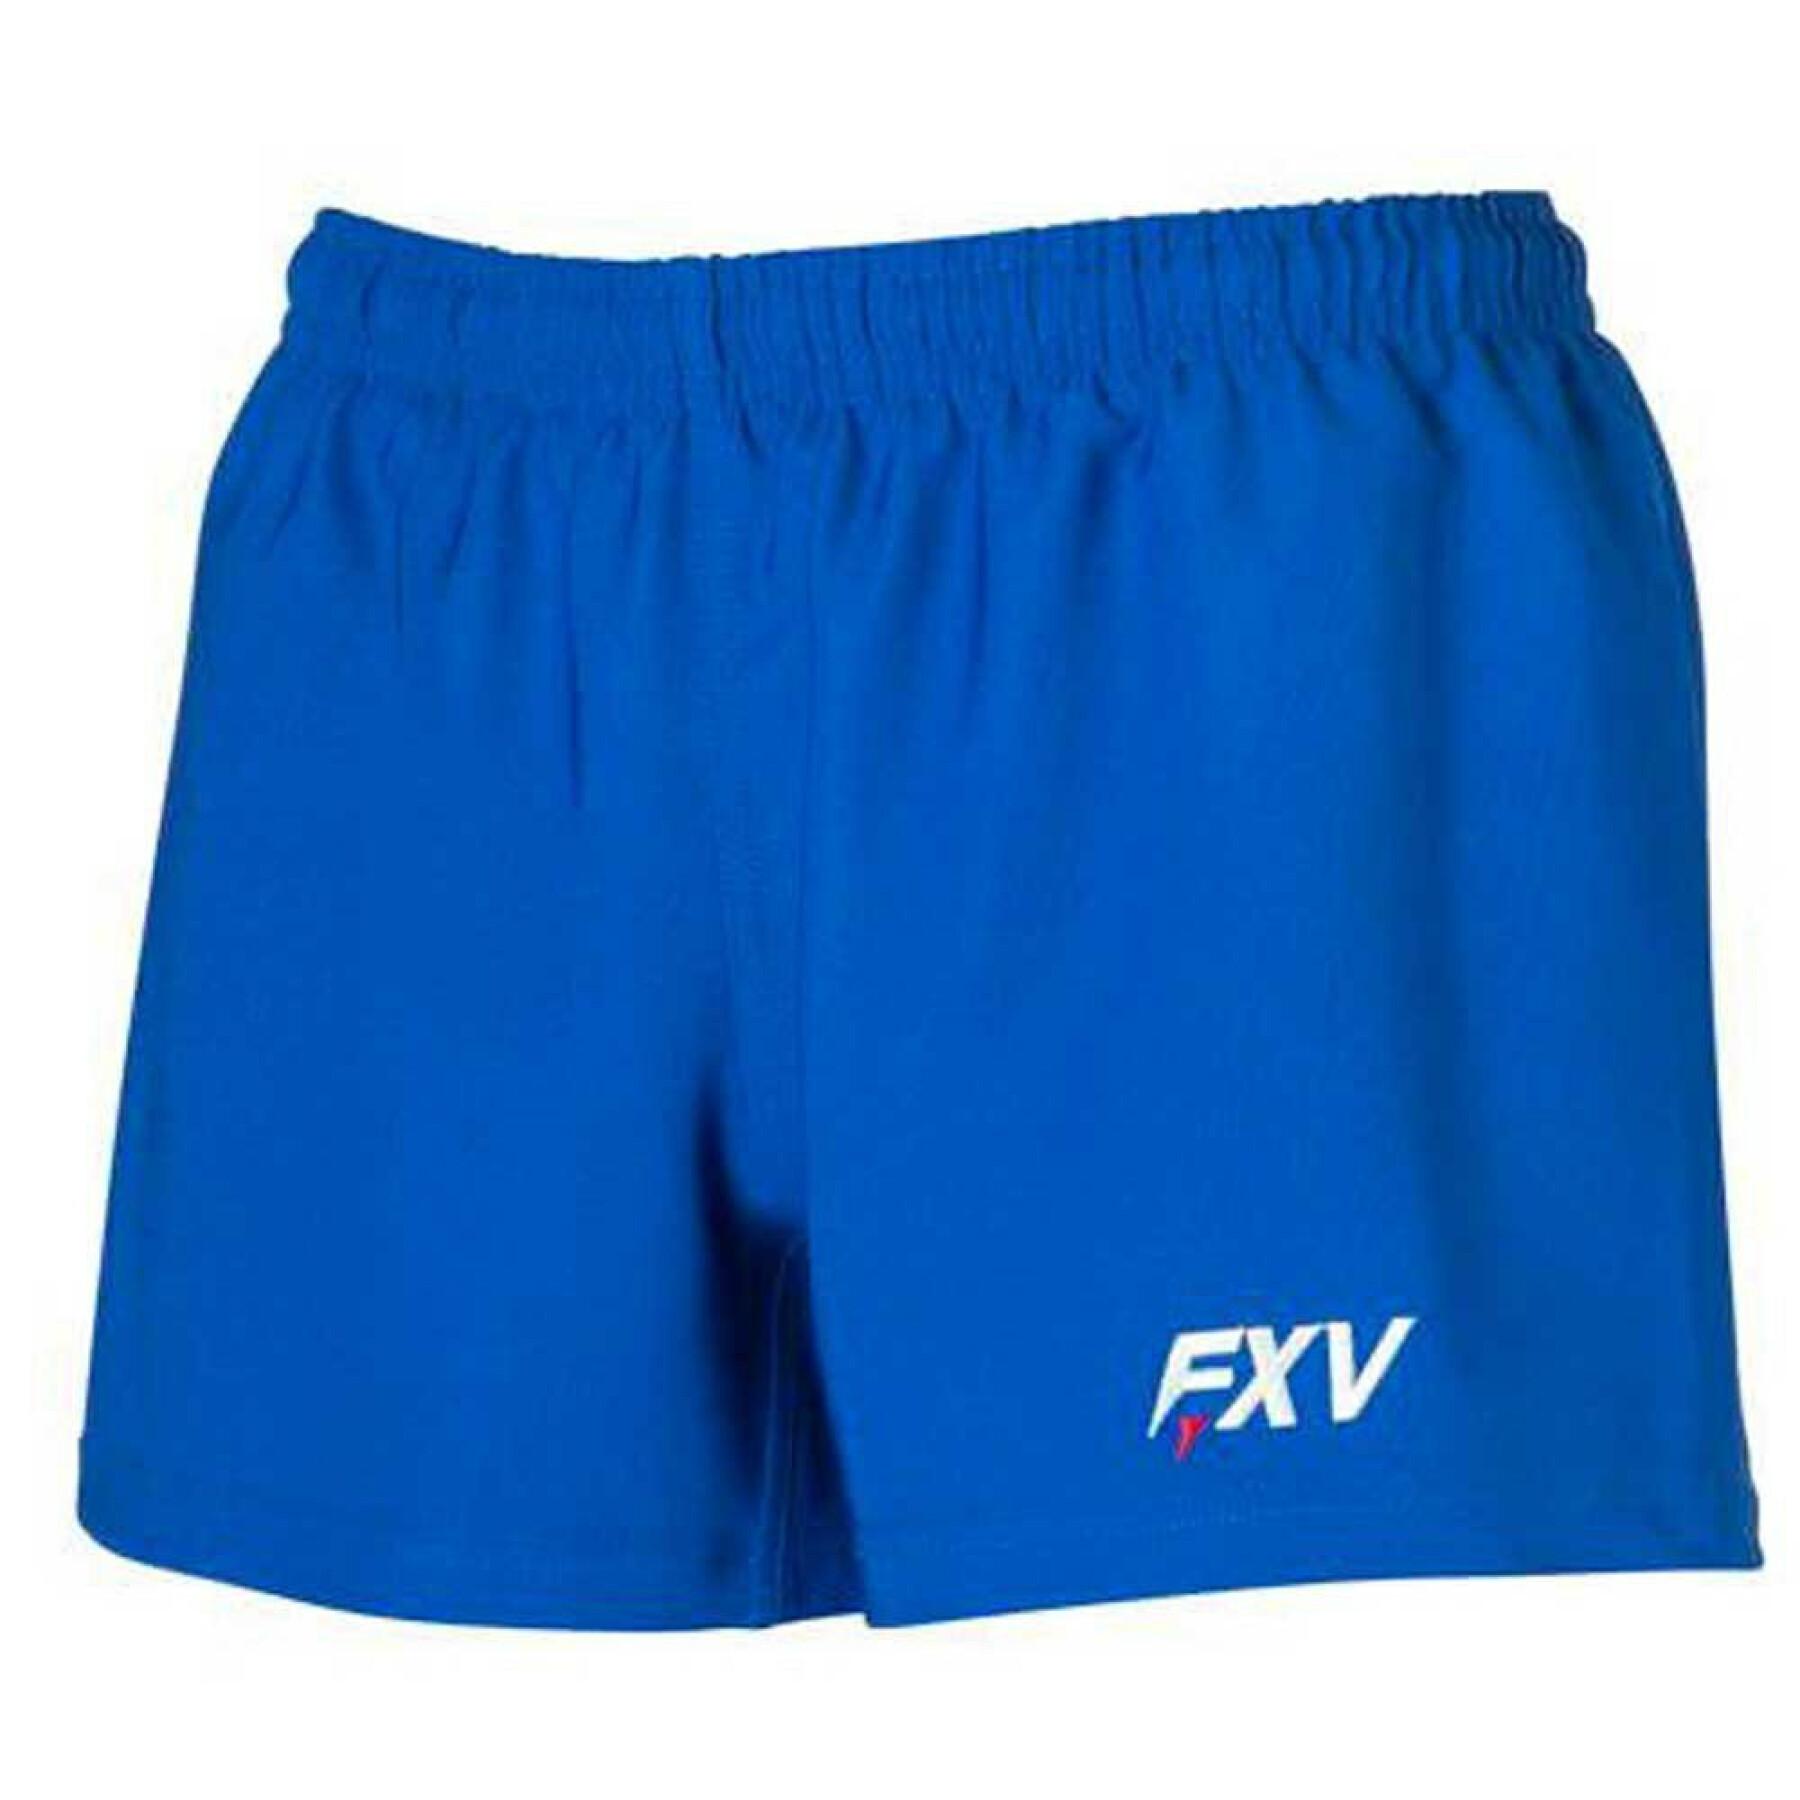 Pantaloncini per bambini Force XV Force 2